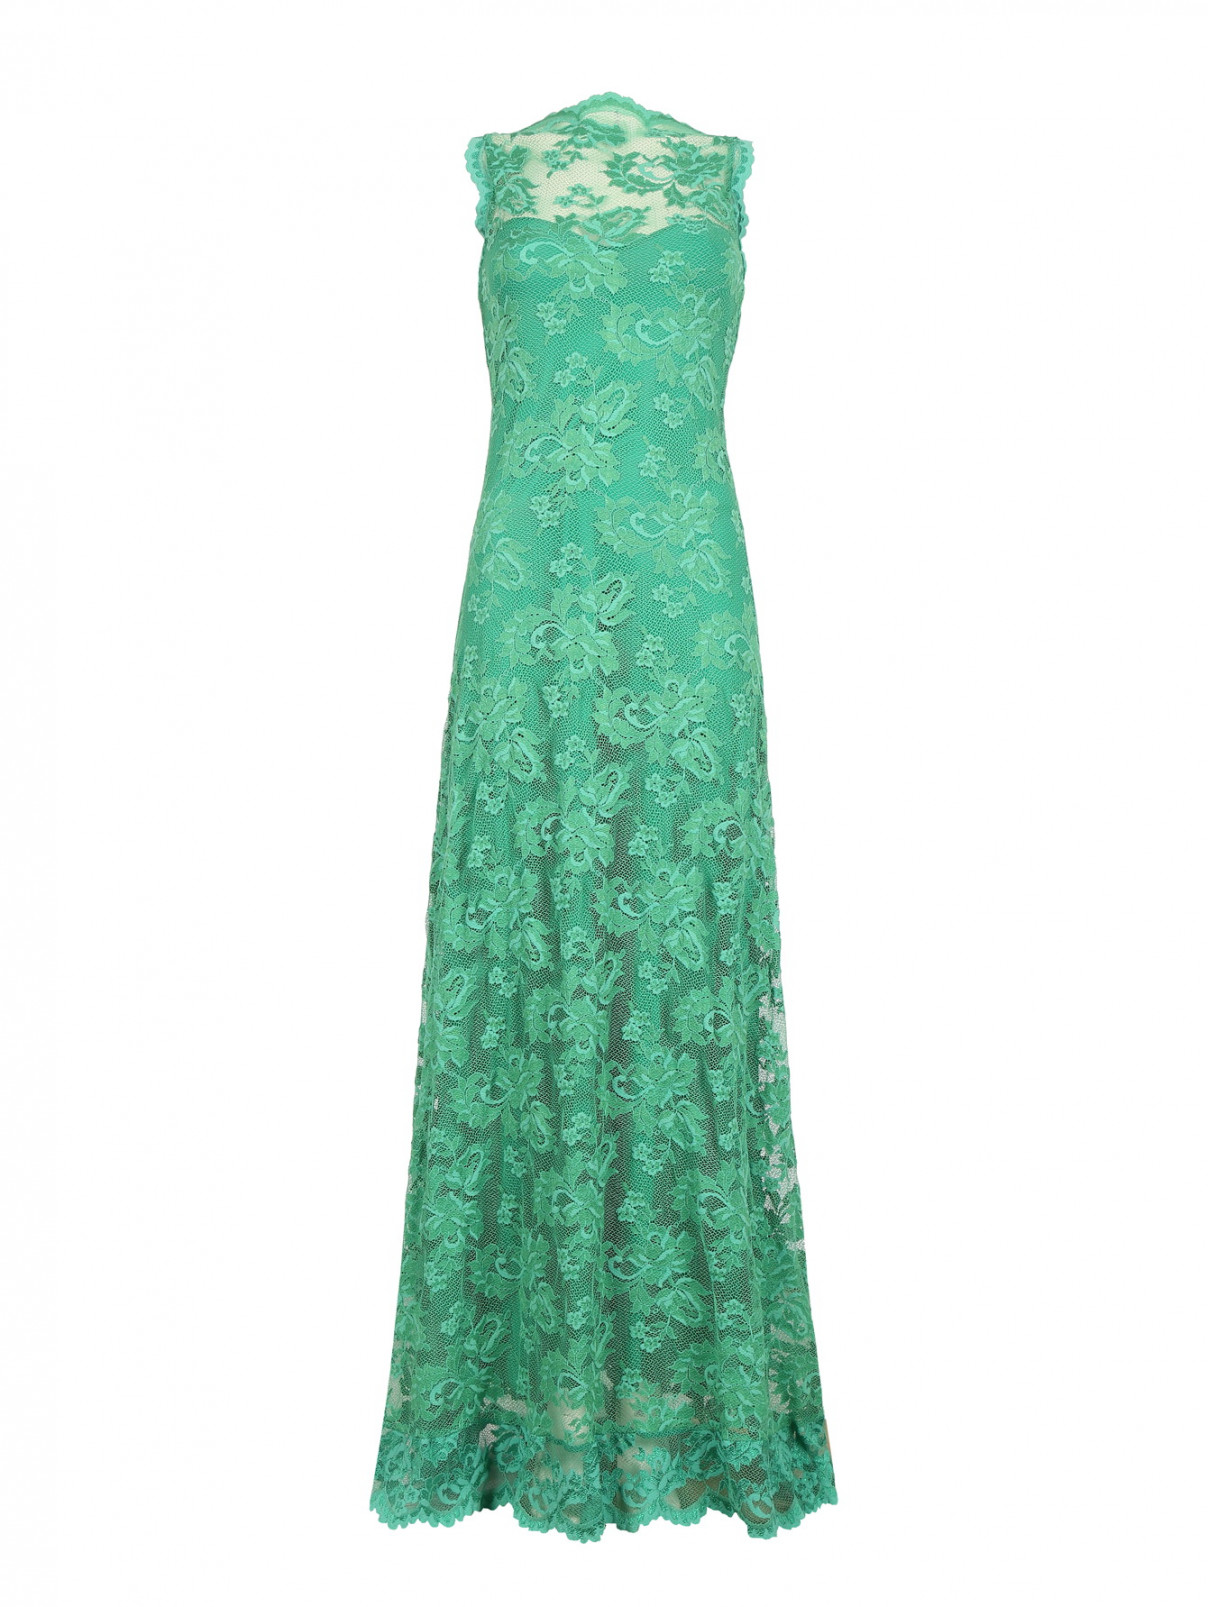 Кружевное платье-макси Olvi's  –  Общий вид  – Цвет:  Зеленый